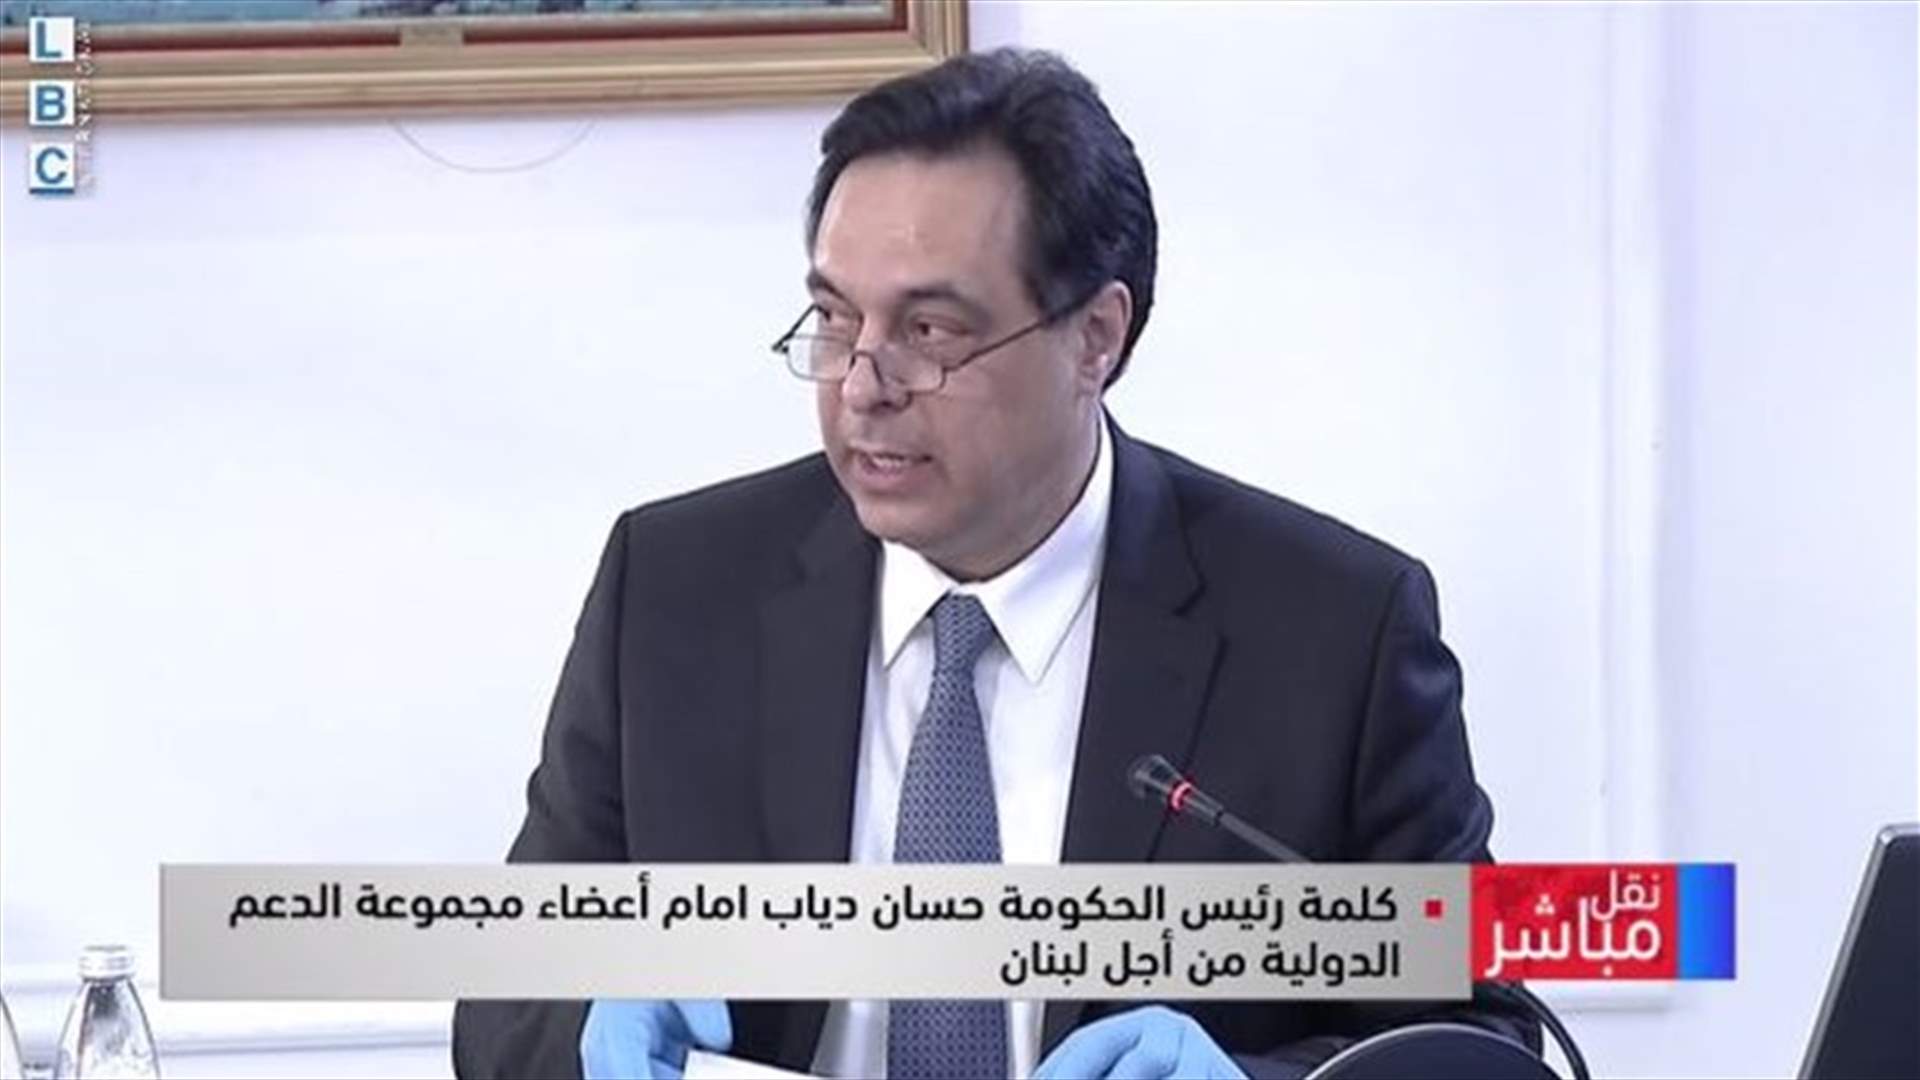 كلمة رئيس الحكومة خلال الاجتماع مع مجموعة الدعم الدولية من أجل لبنان (فيديو)